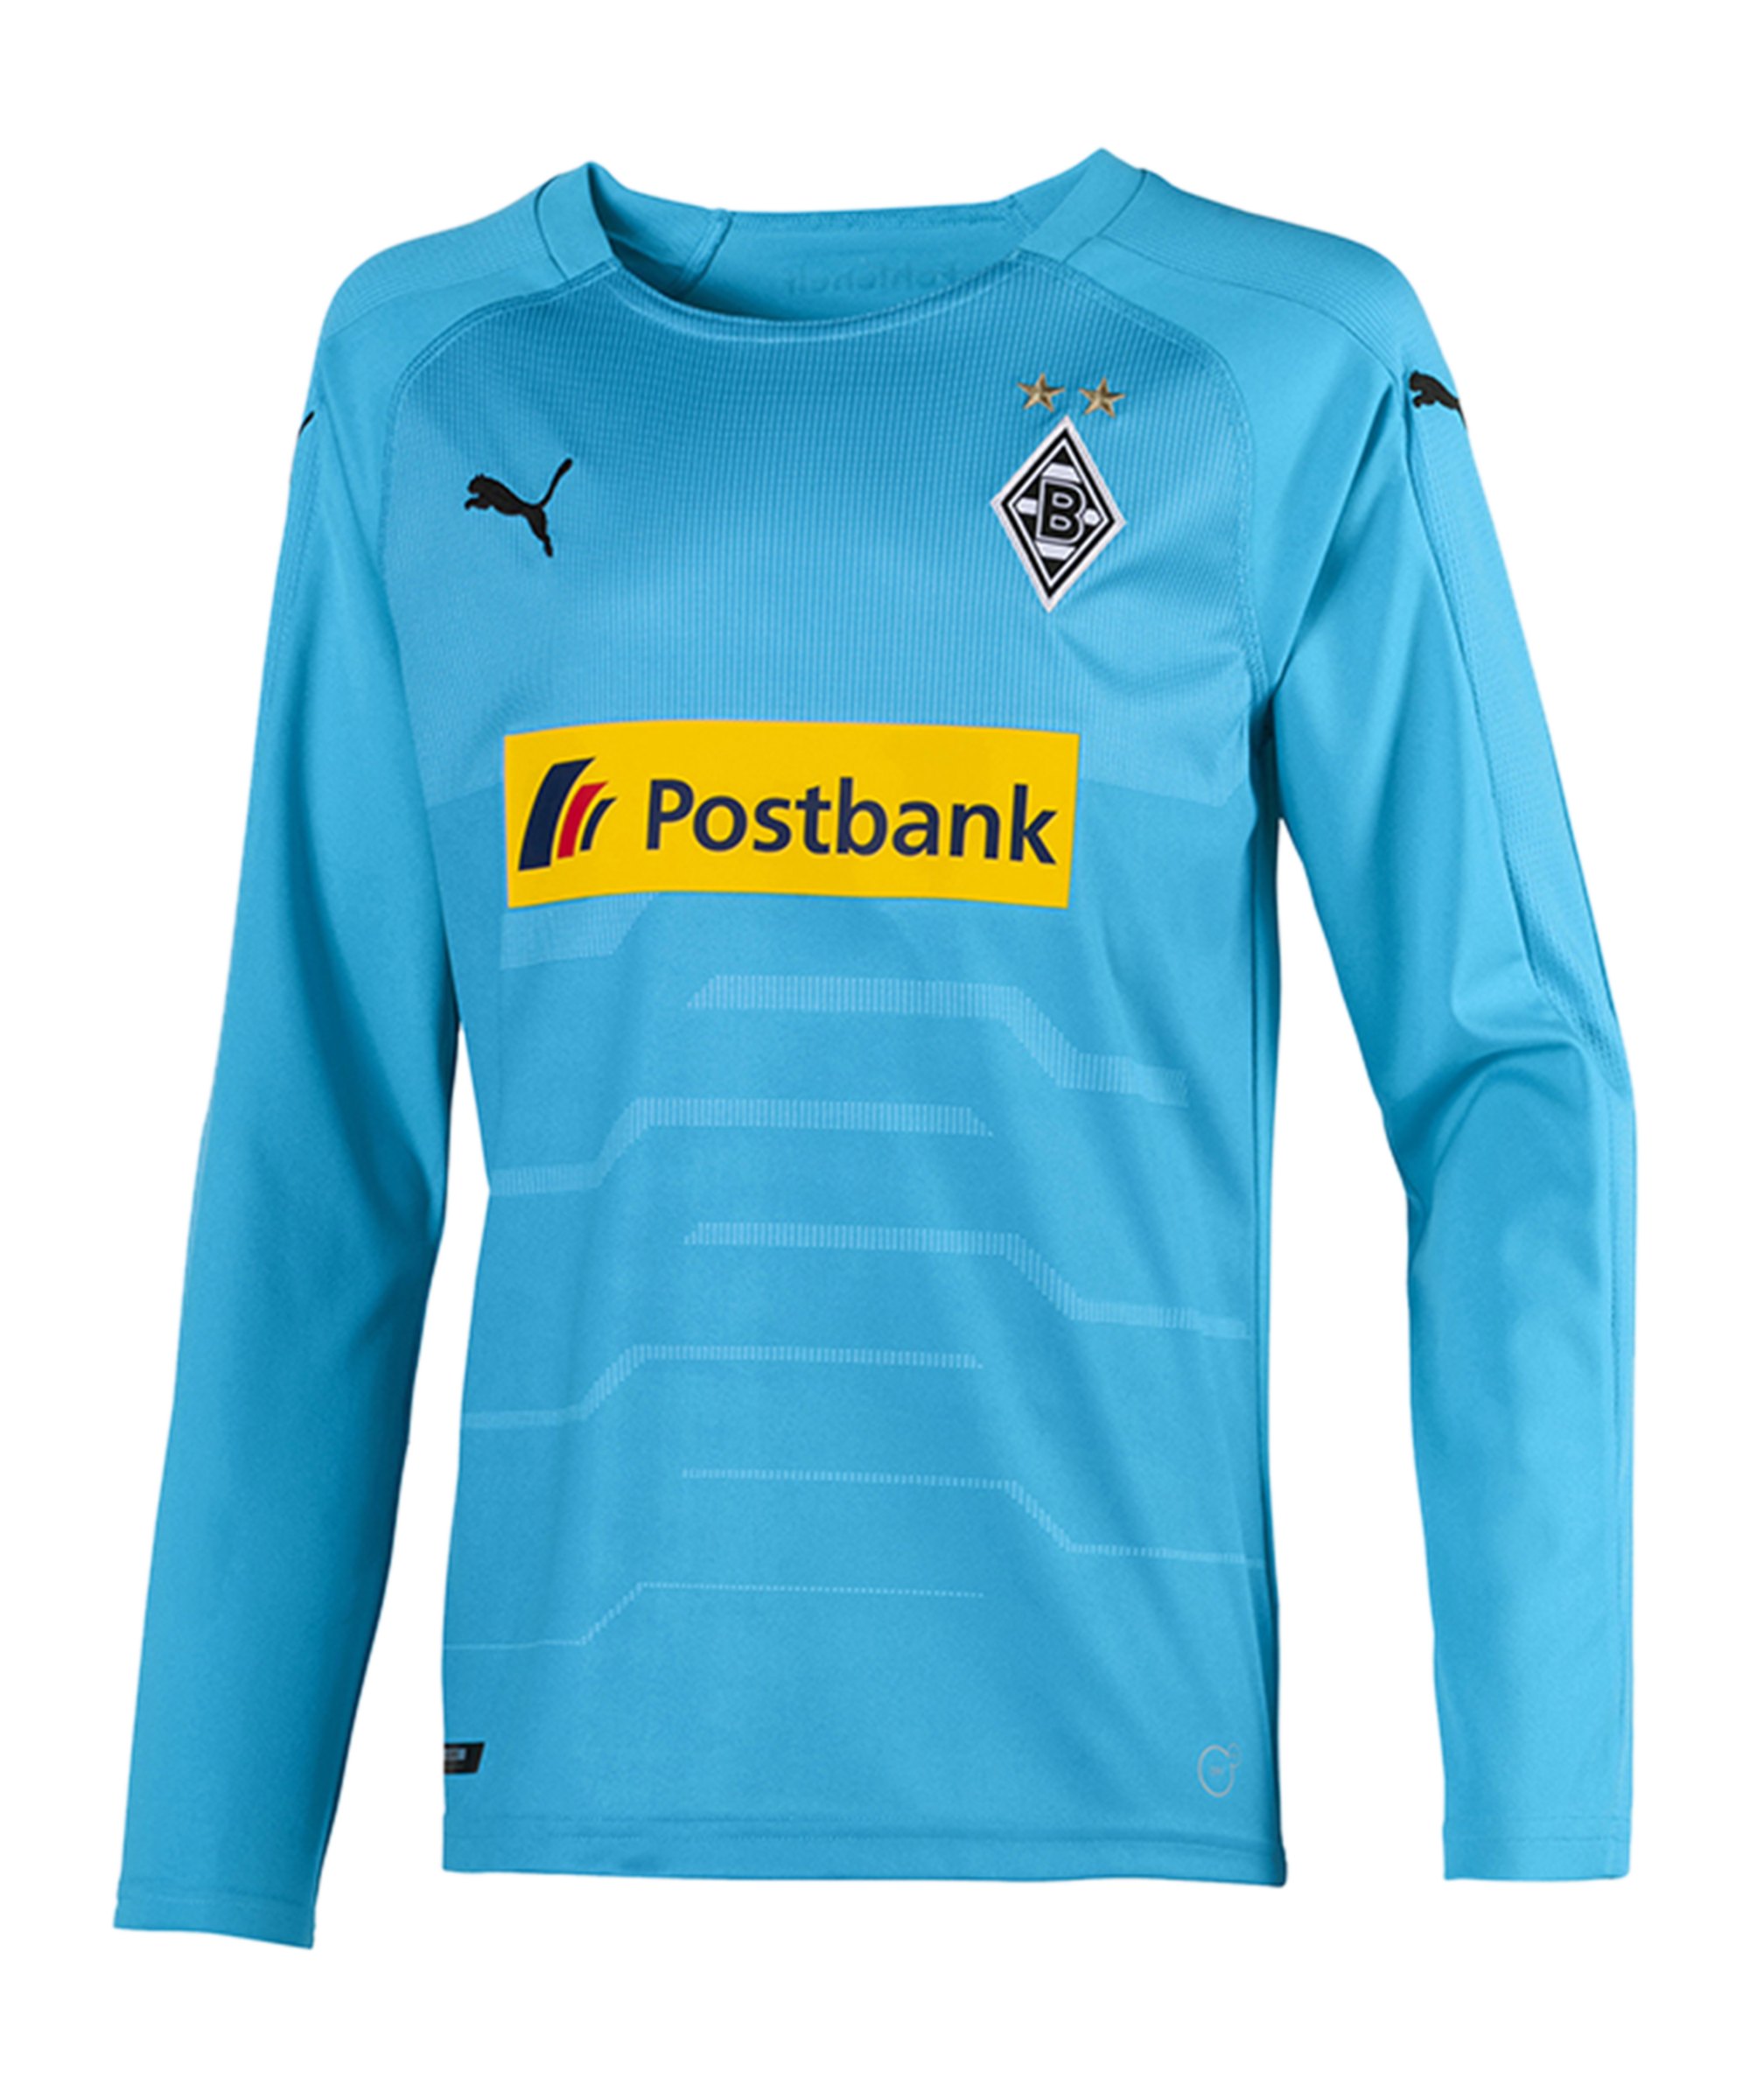 PUMA Borussia Mönchengladbach Torwarttrikot 2018/2019 Kids Blau F08 - blau